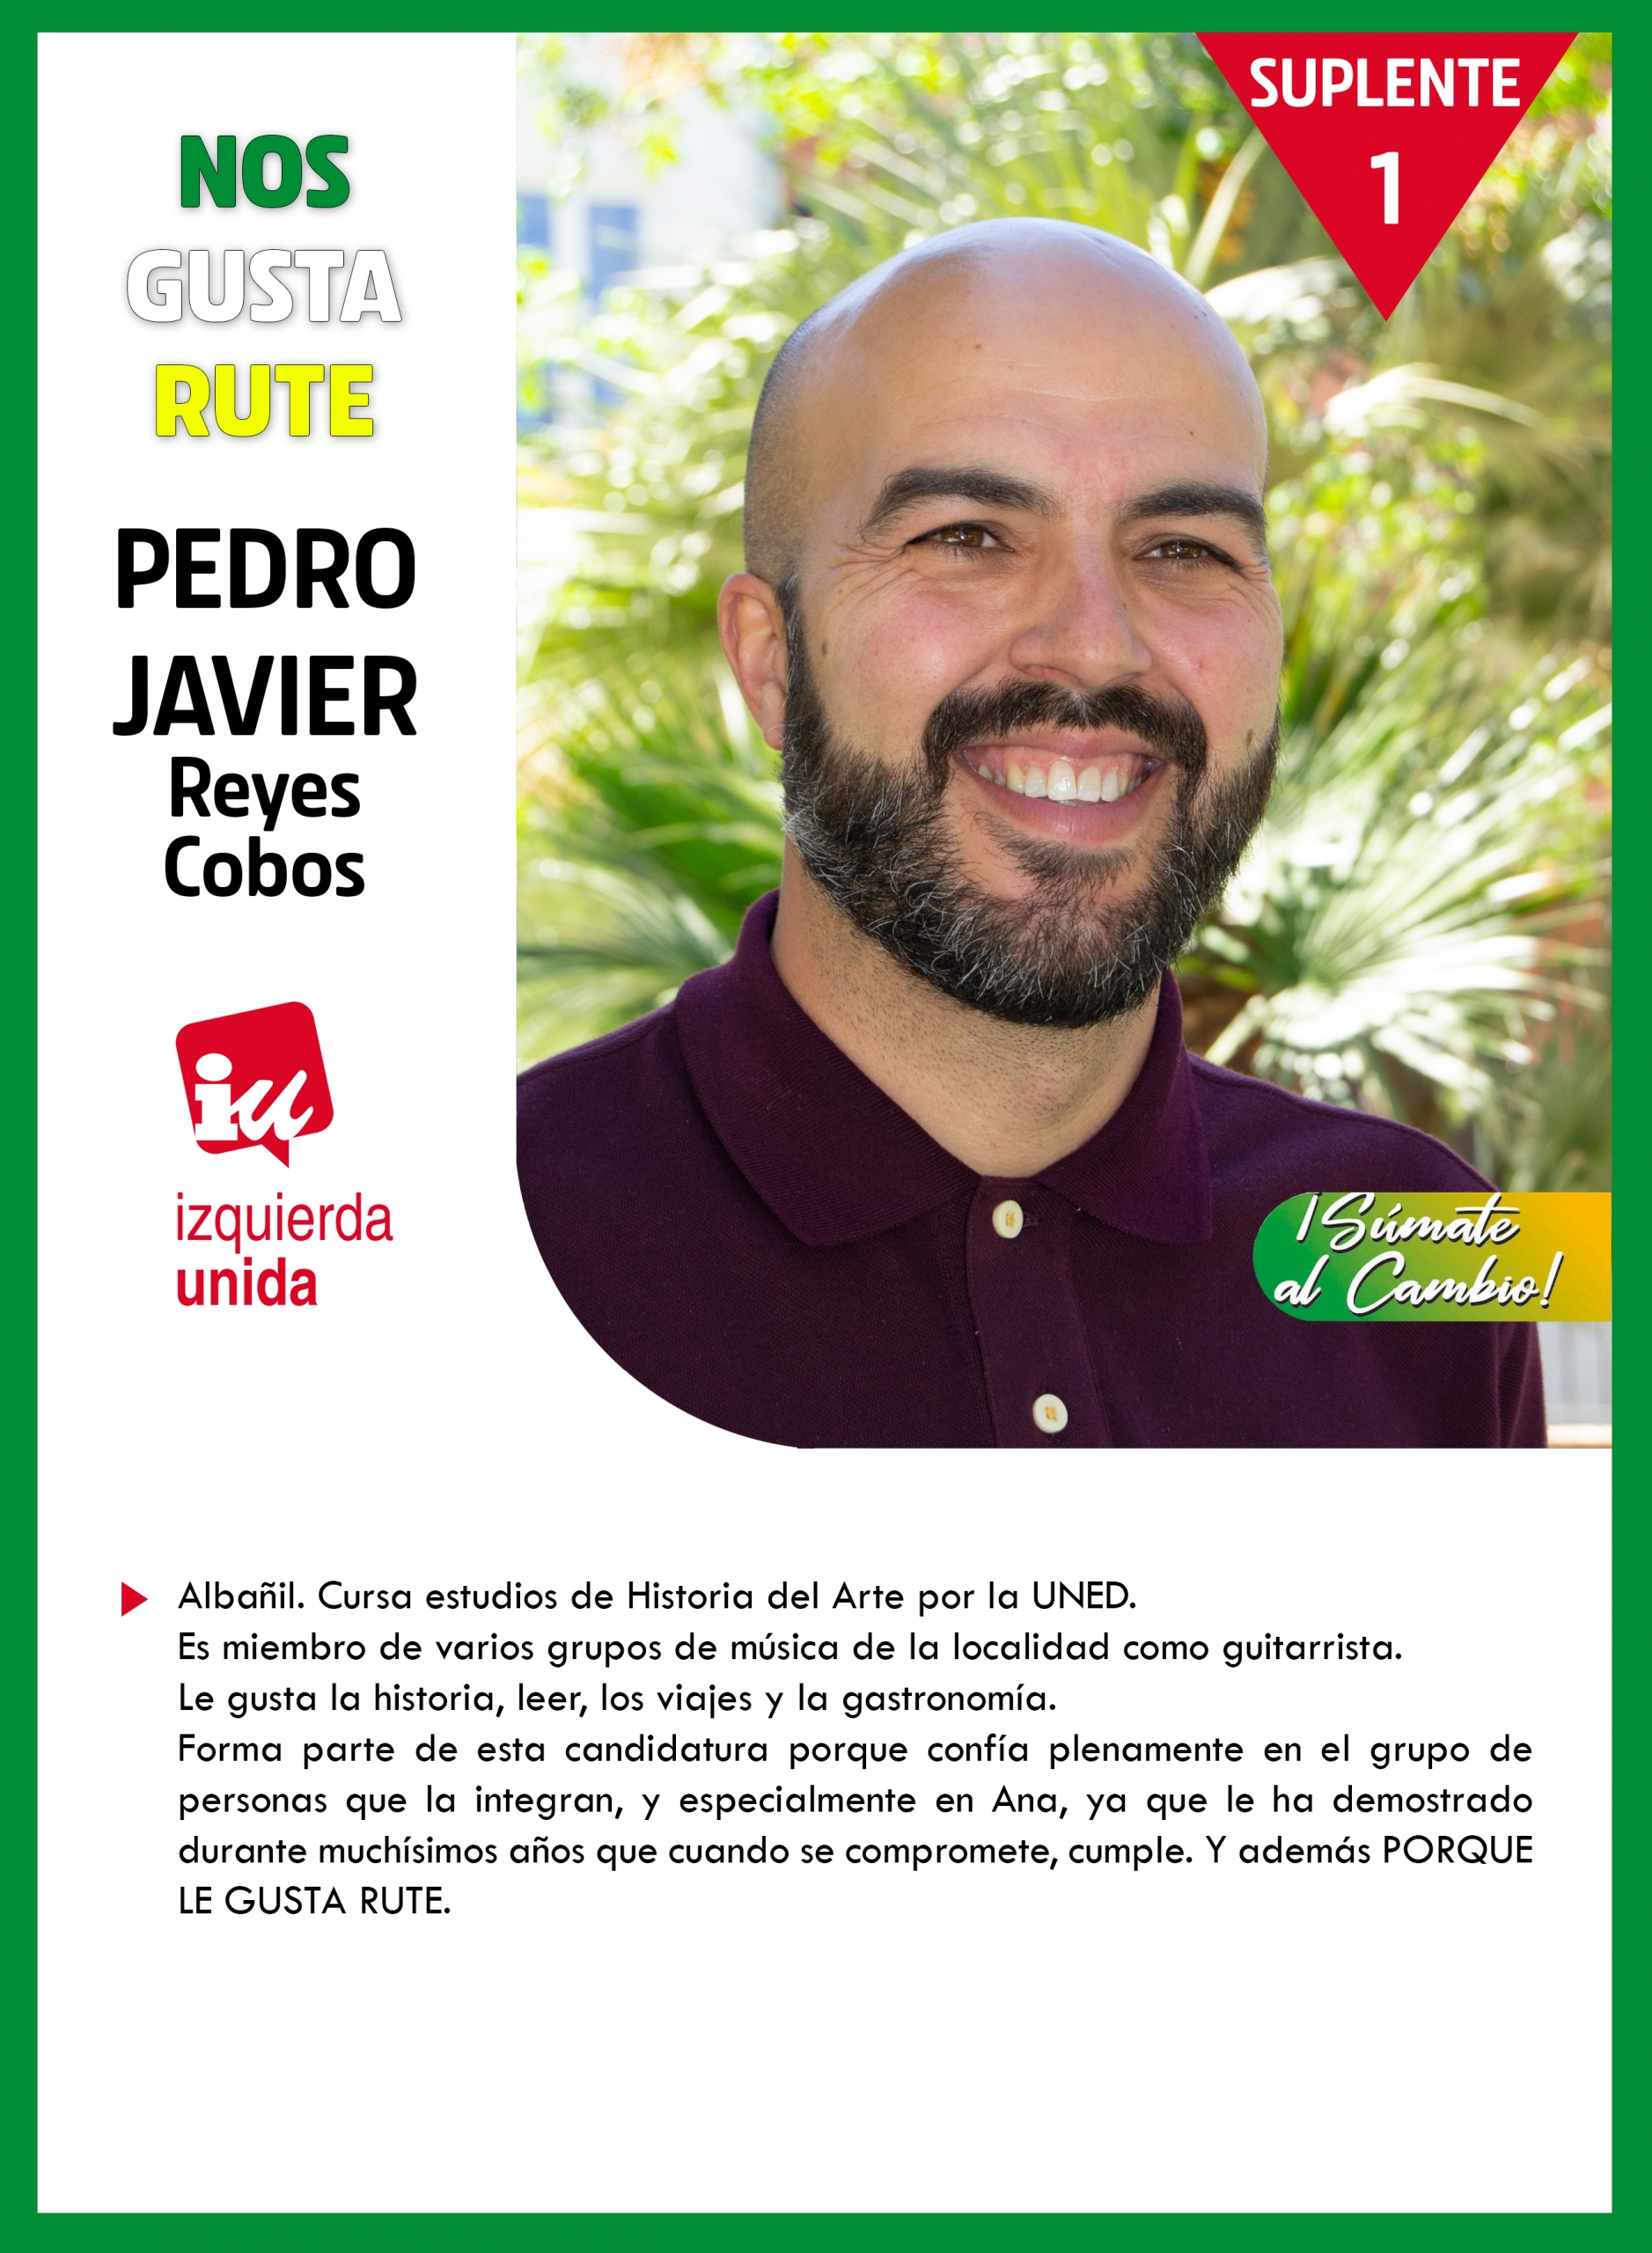 Pedro Javier Reyes Cobos 